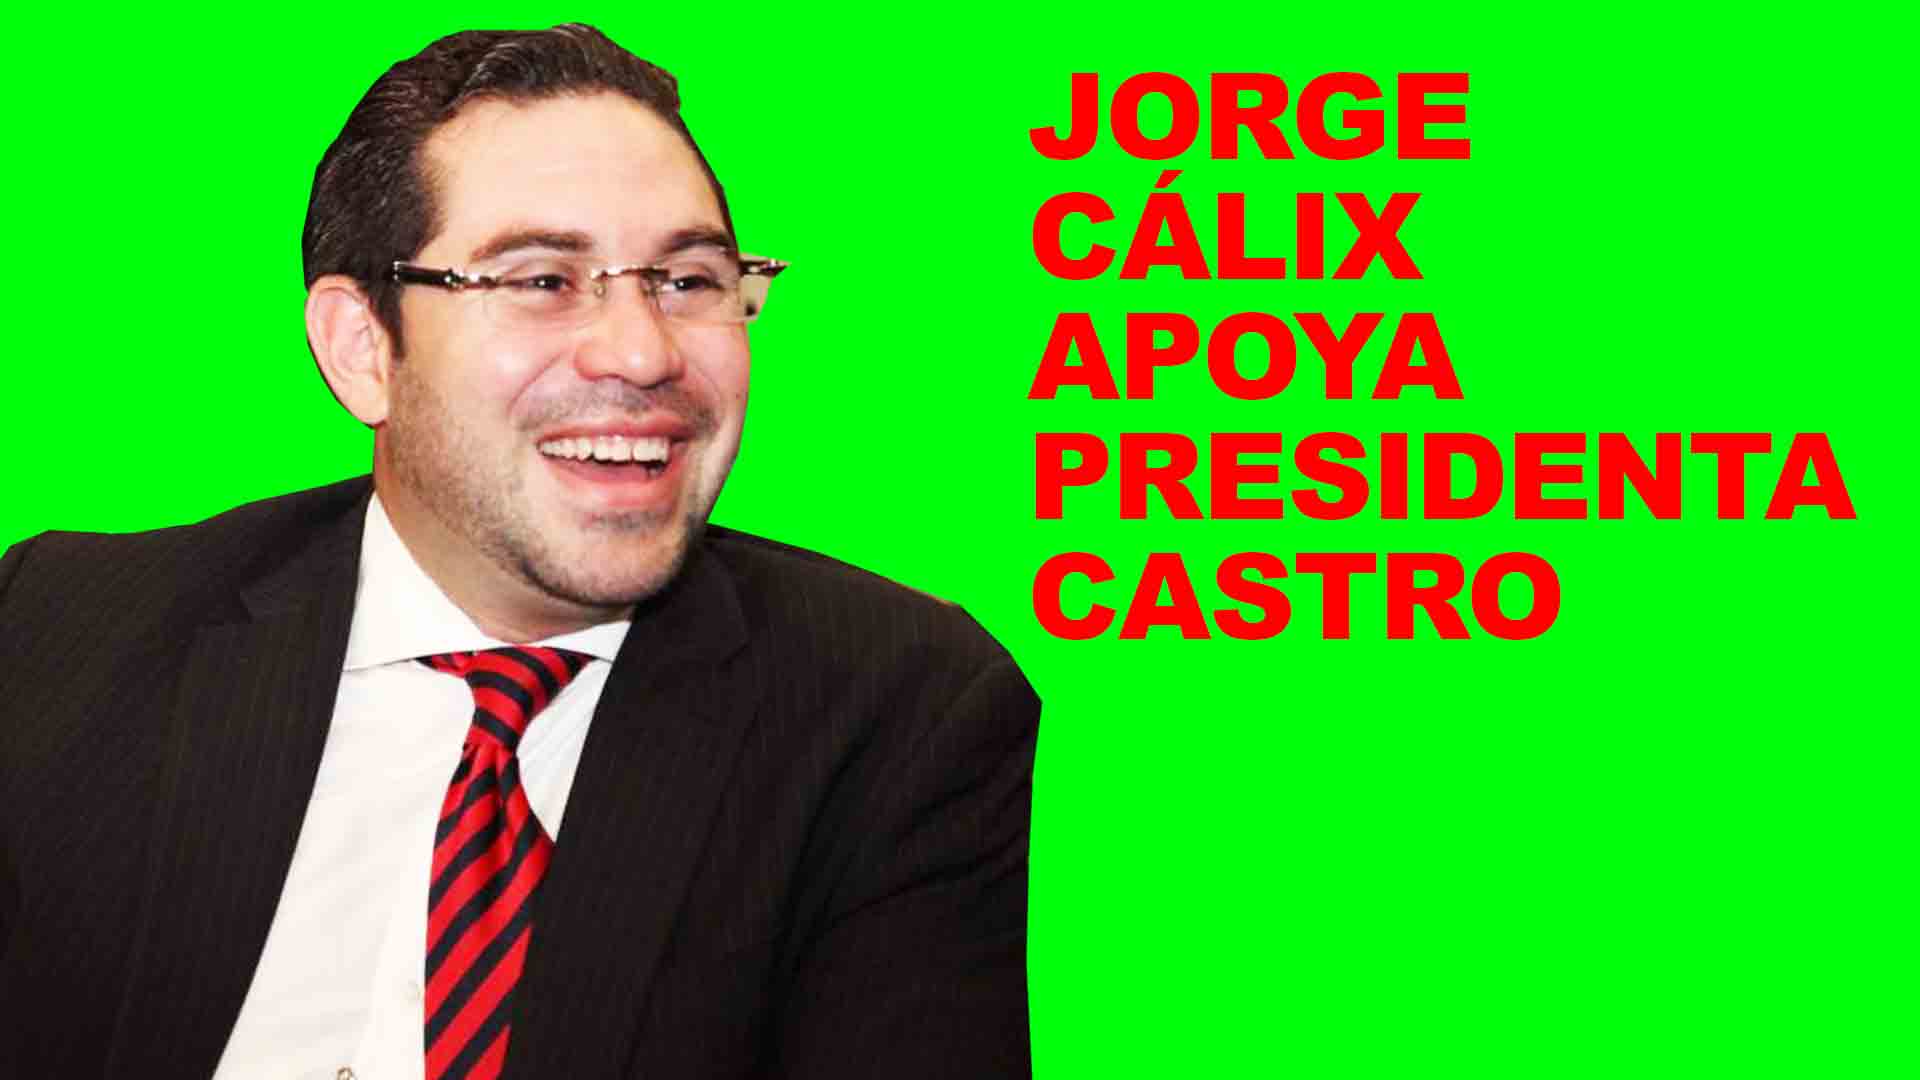 Jorge Cálix descarta una bancadita en Libre y dice apoya a presidenta Castro